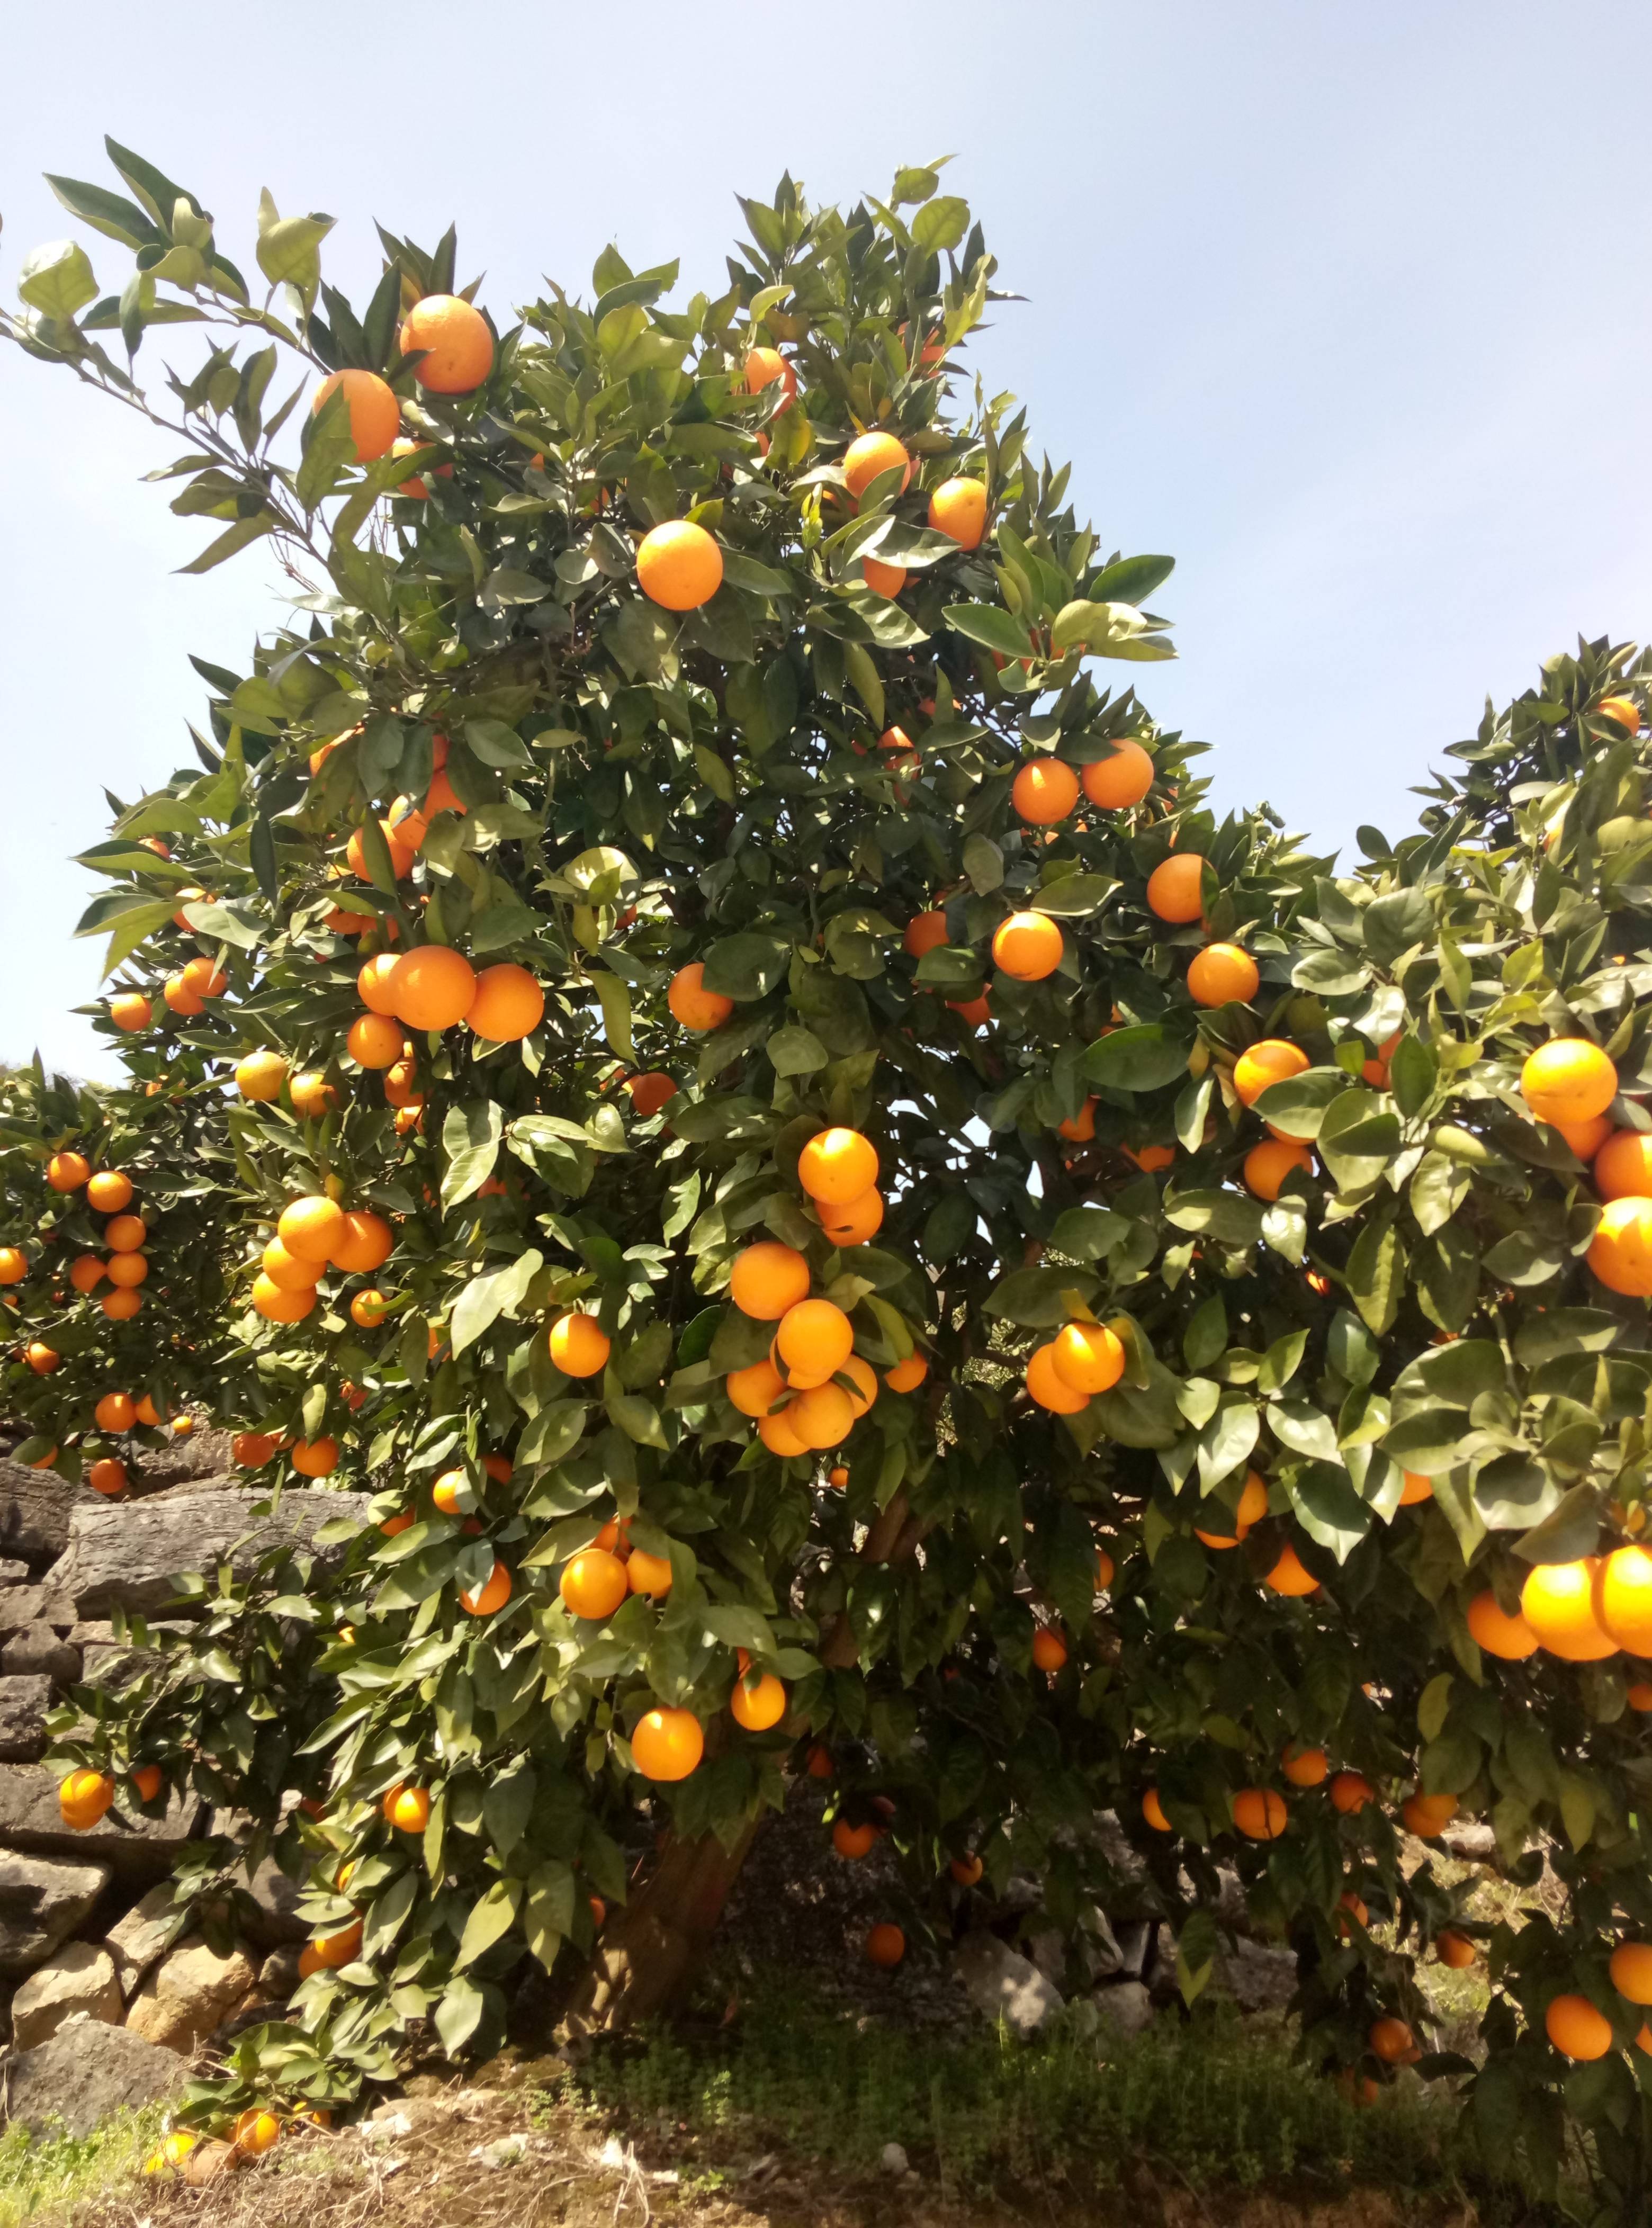 湖北宜昌生产的特早普早柑橘现已大量上市，欢迎广大客户前来收购。我们将以诚信的原则，联系电话:13310575327